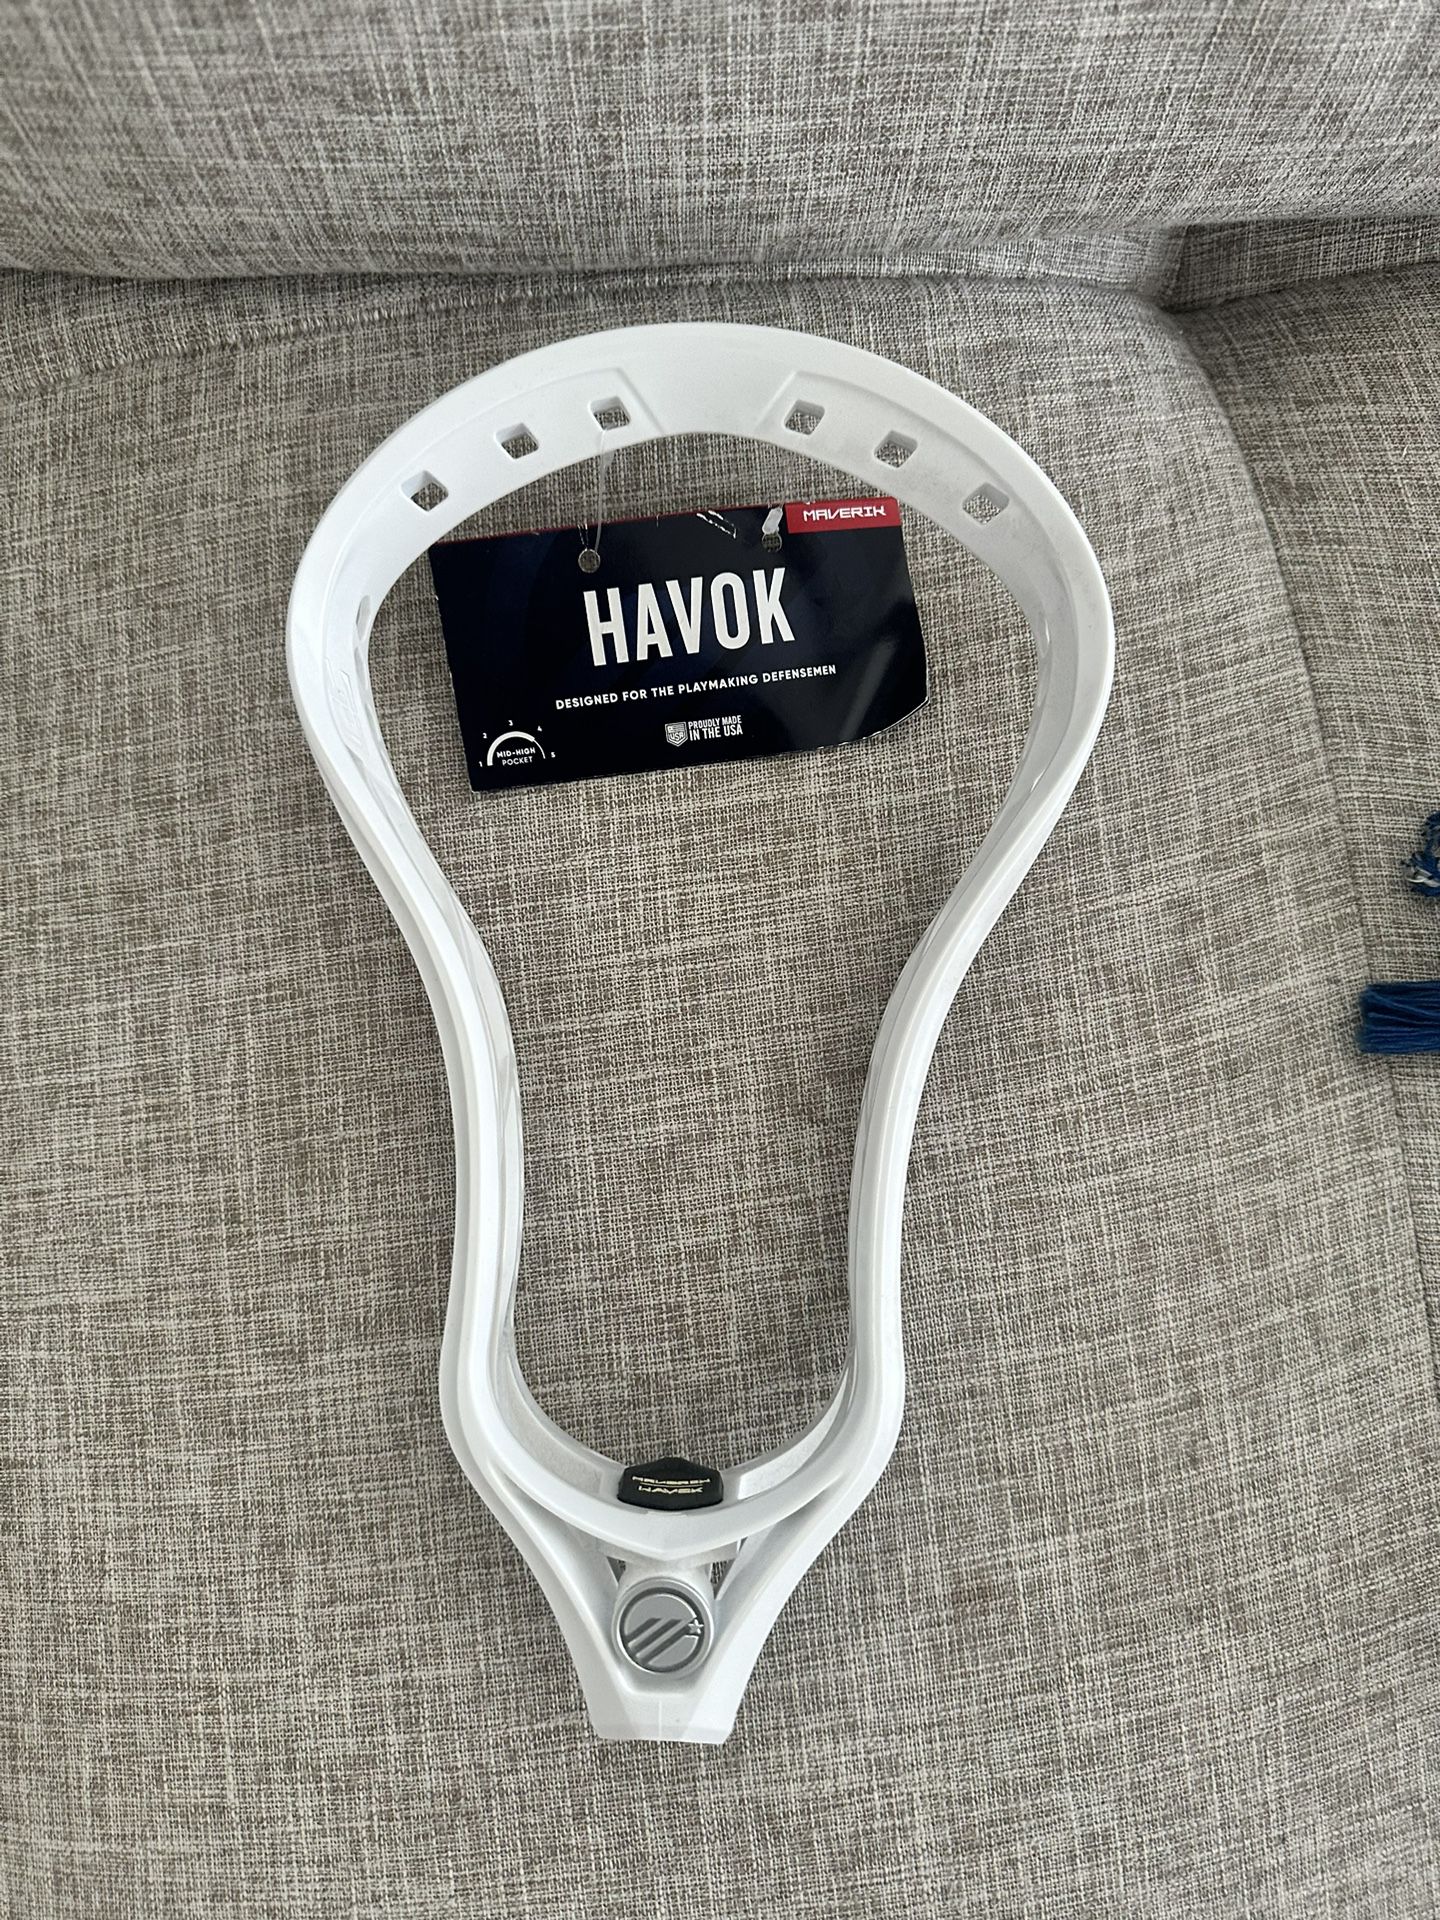 Maverick Havok Lacrosse Head